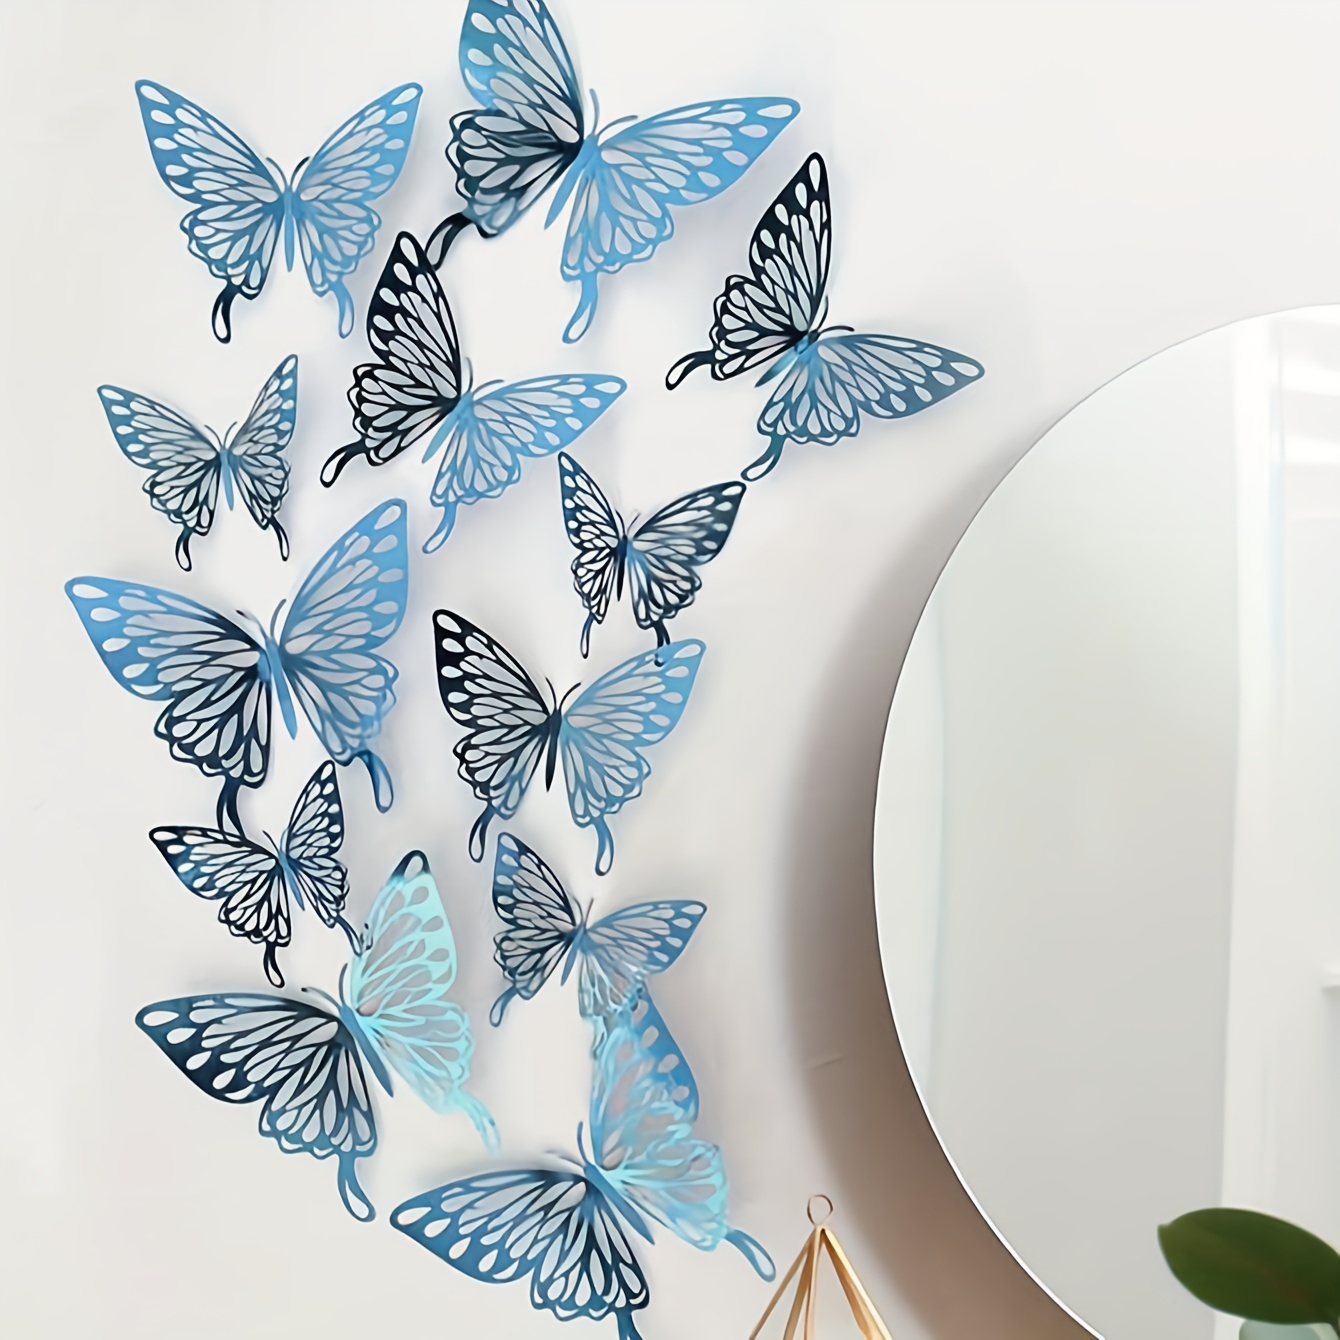 Sticker - 3D Hollow Butterfly Decoration Sticker